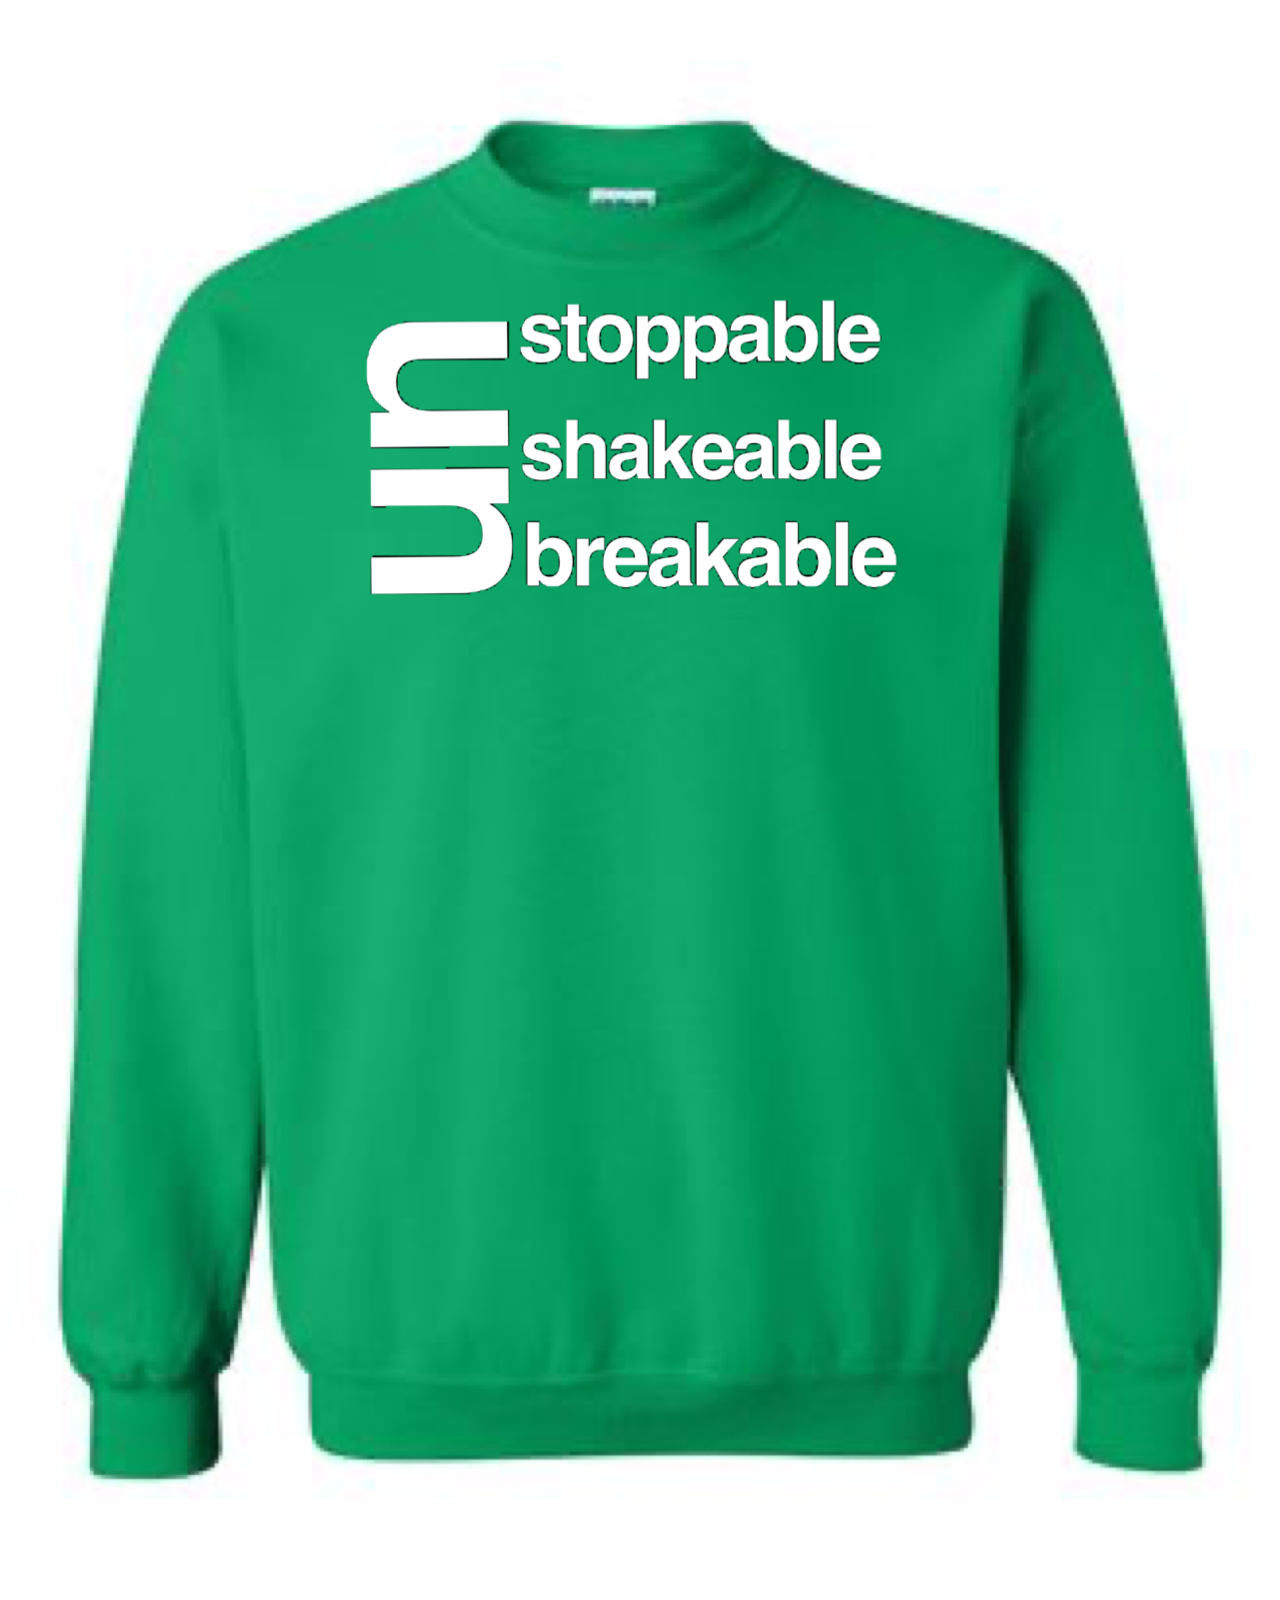 Unstoppable Unshakeable Unbreakable Crewneck Sweatshirt